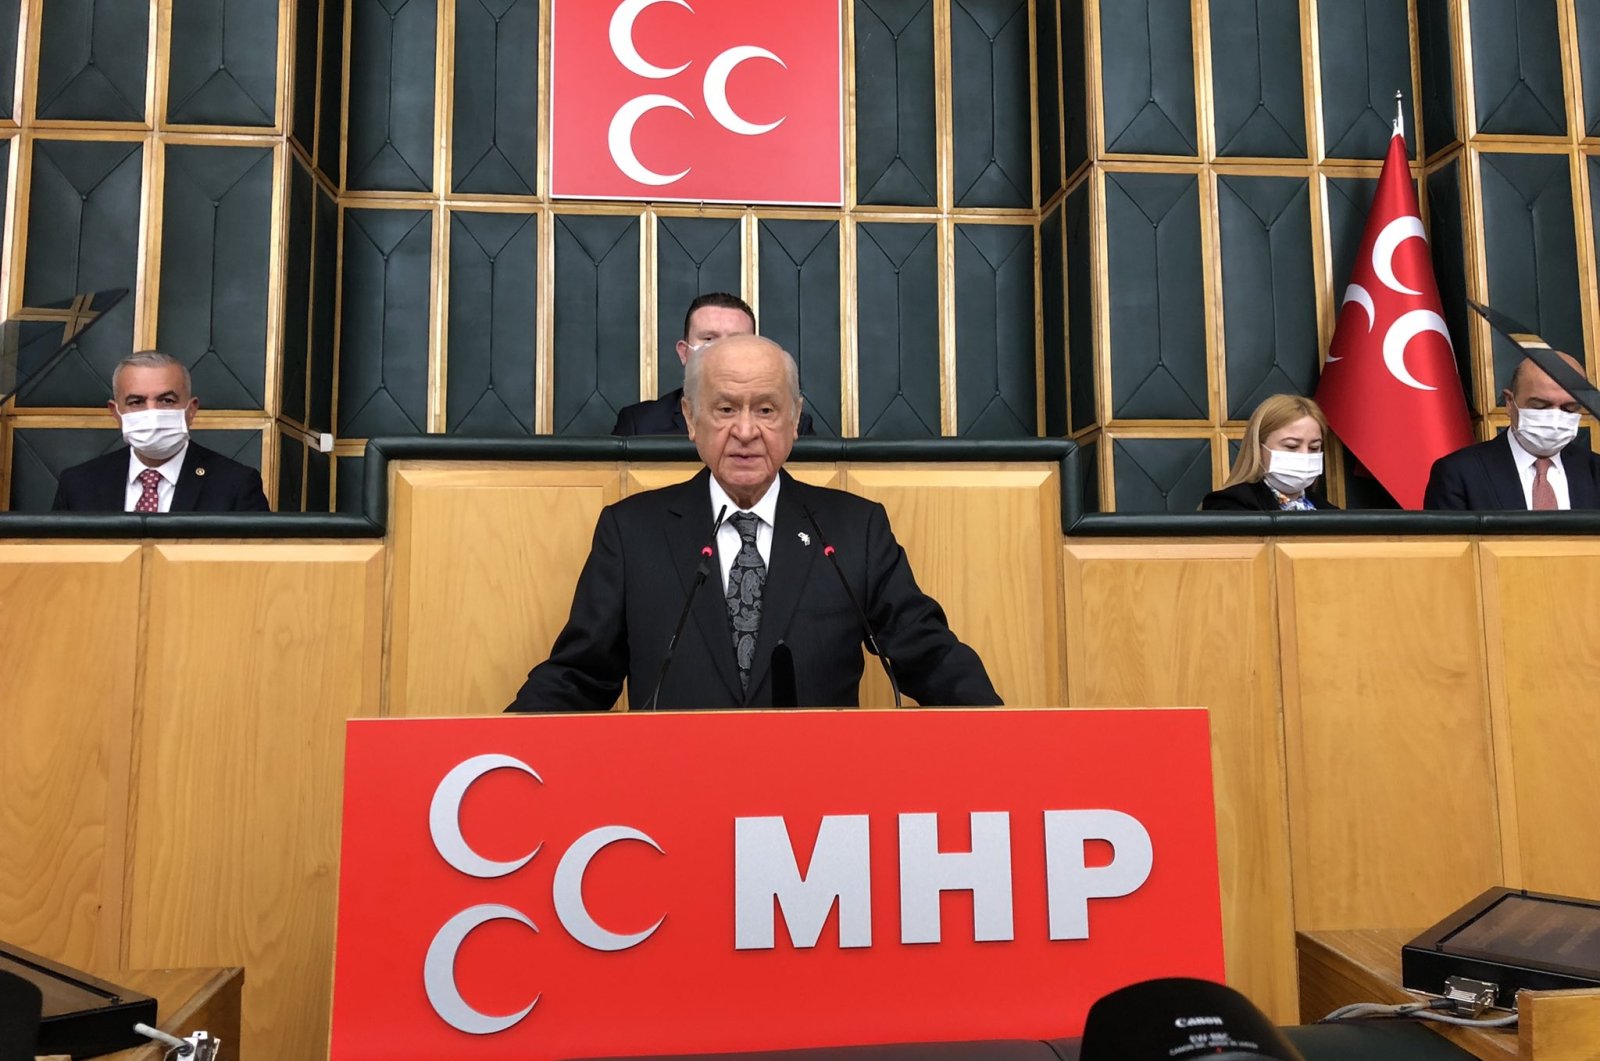 Ketua MHP meminta blok oposisi untuk mengumumkan kandidat